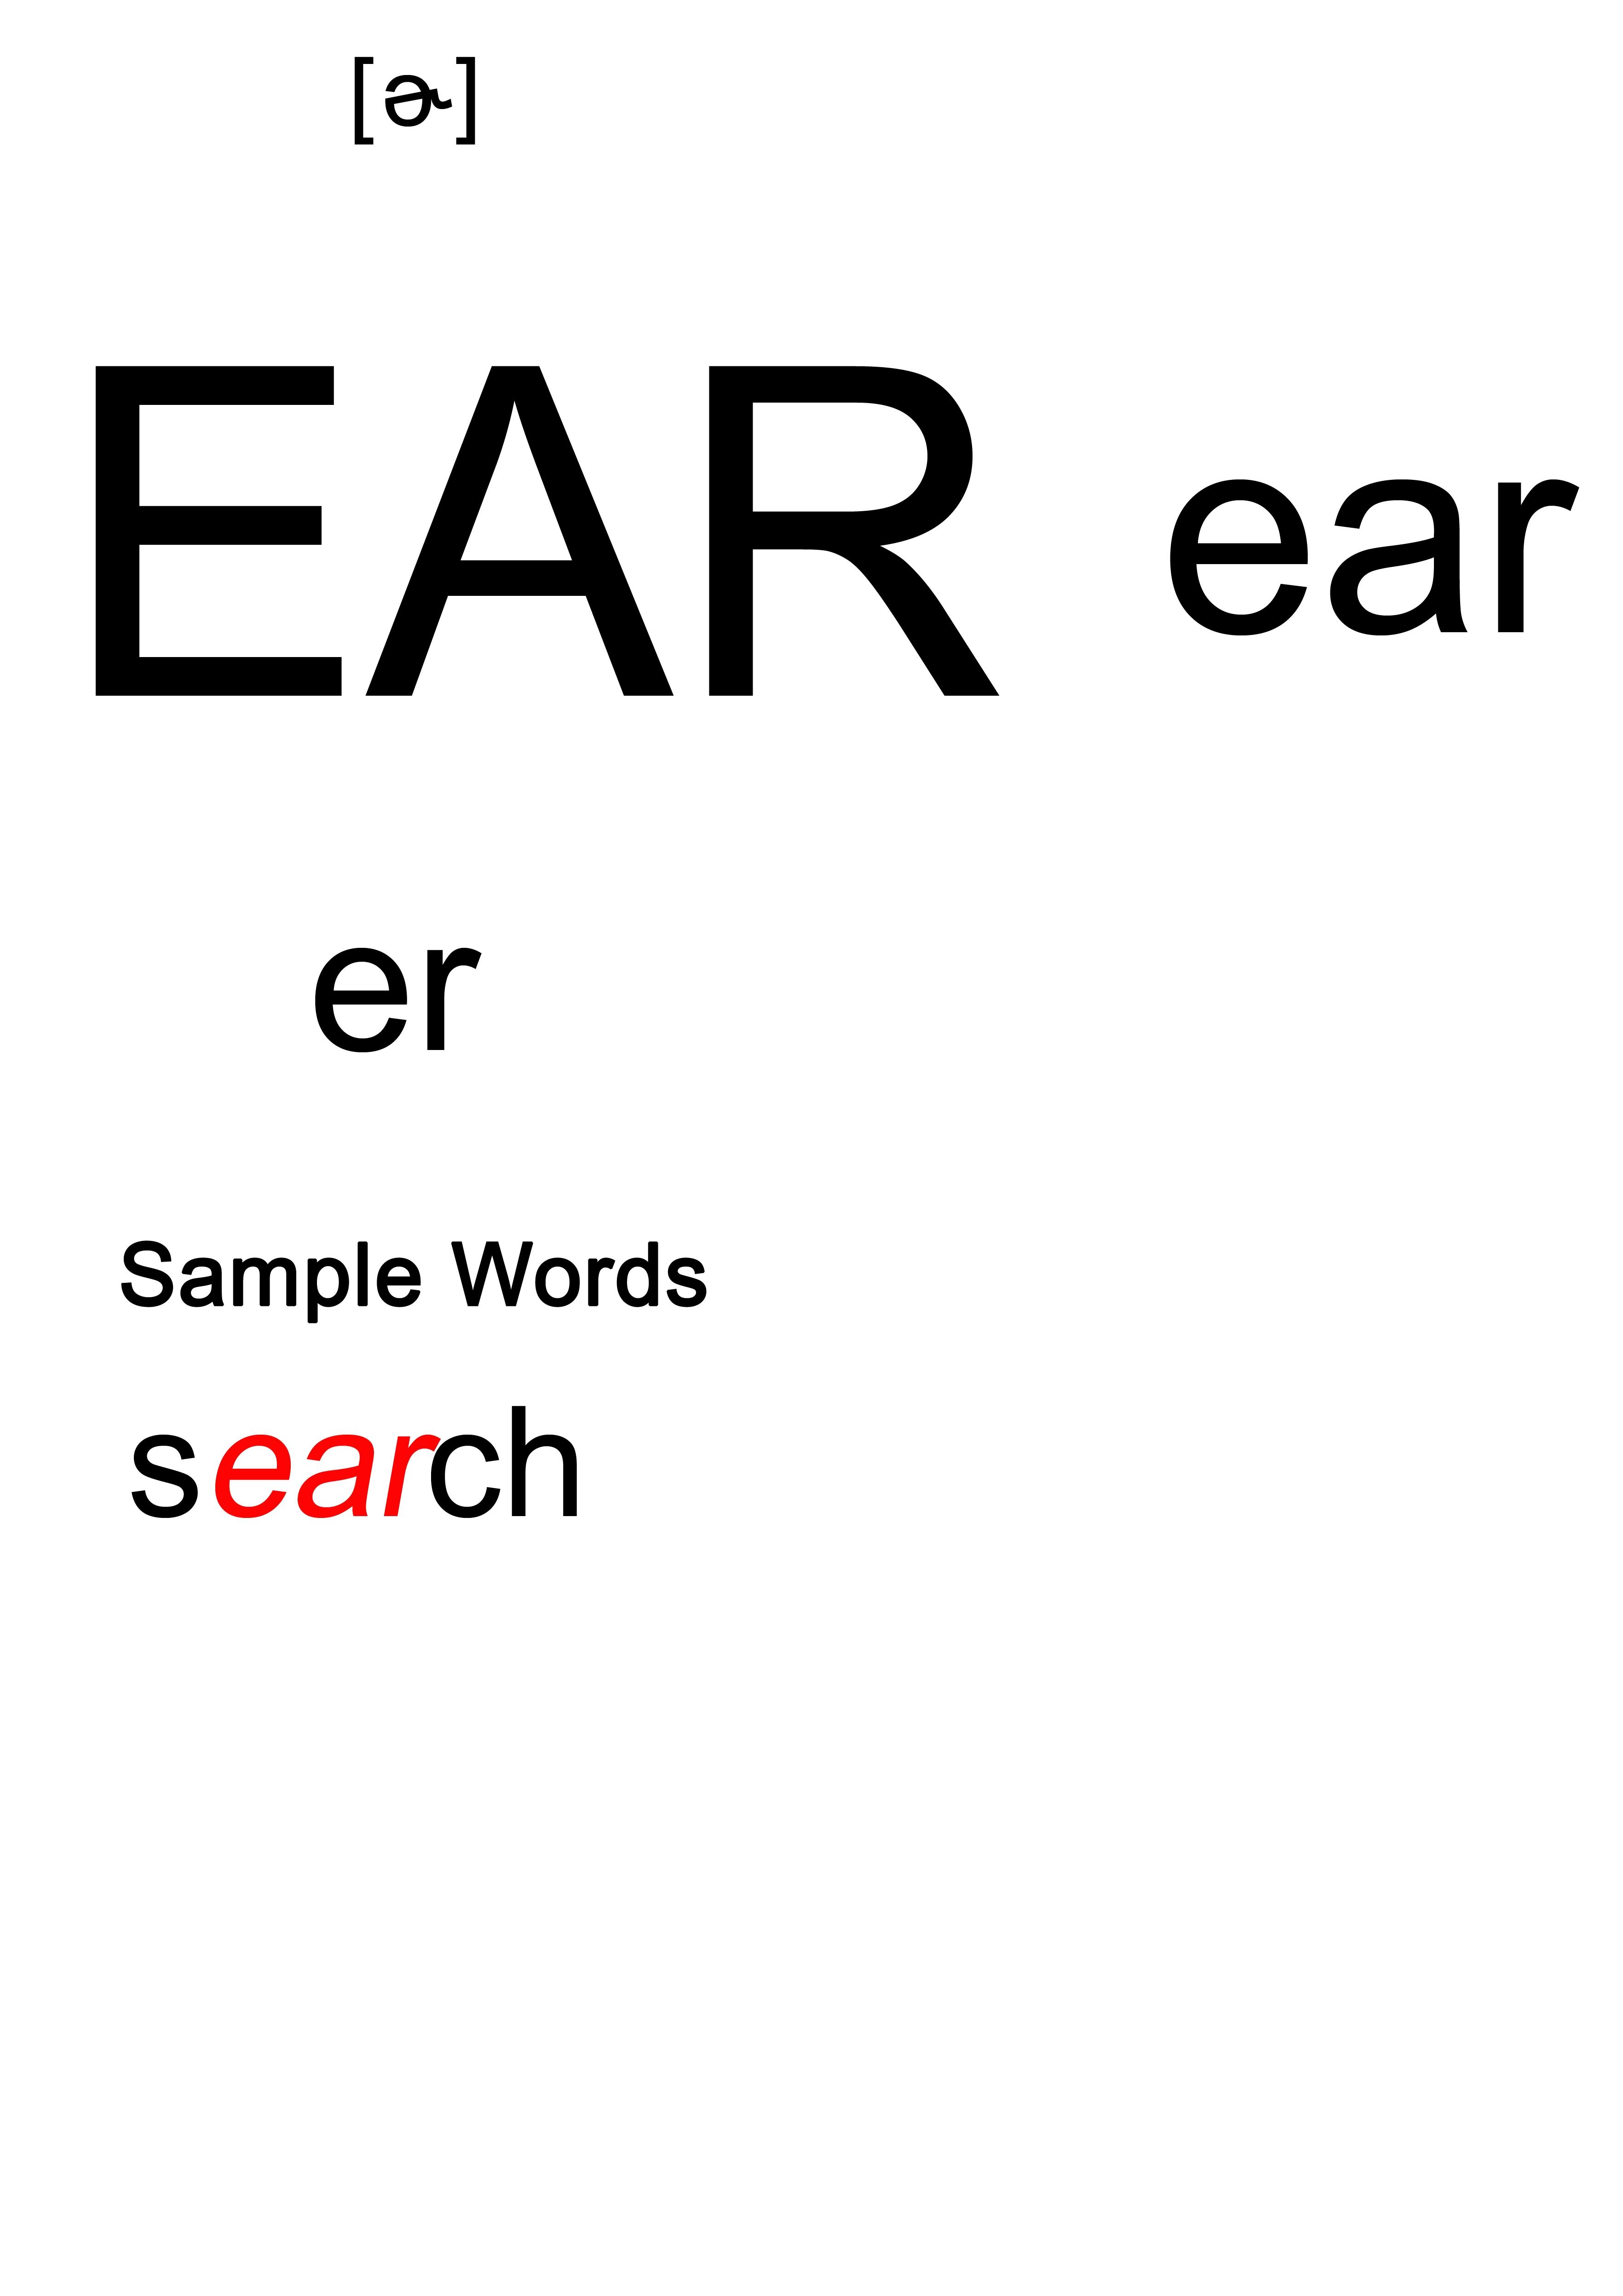 33.元音辅音字母组合EAR的发音《记词更